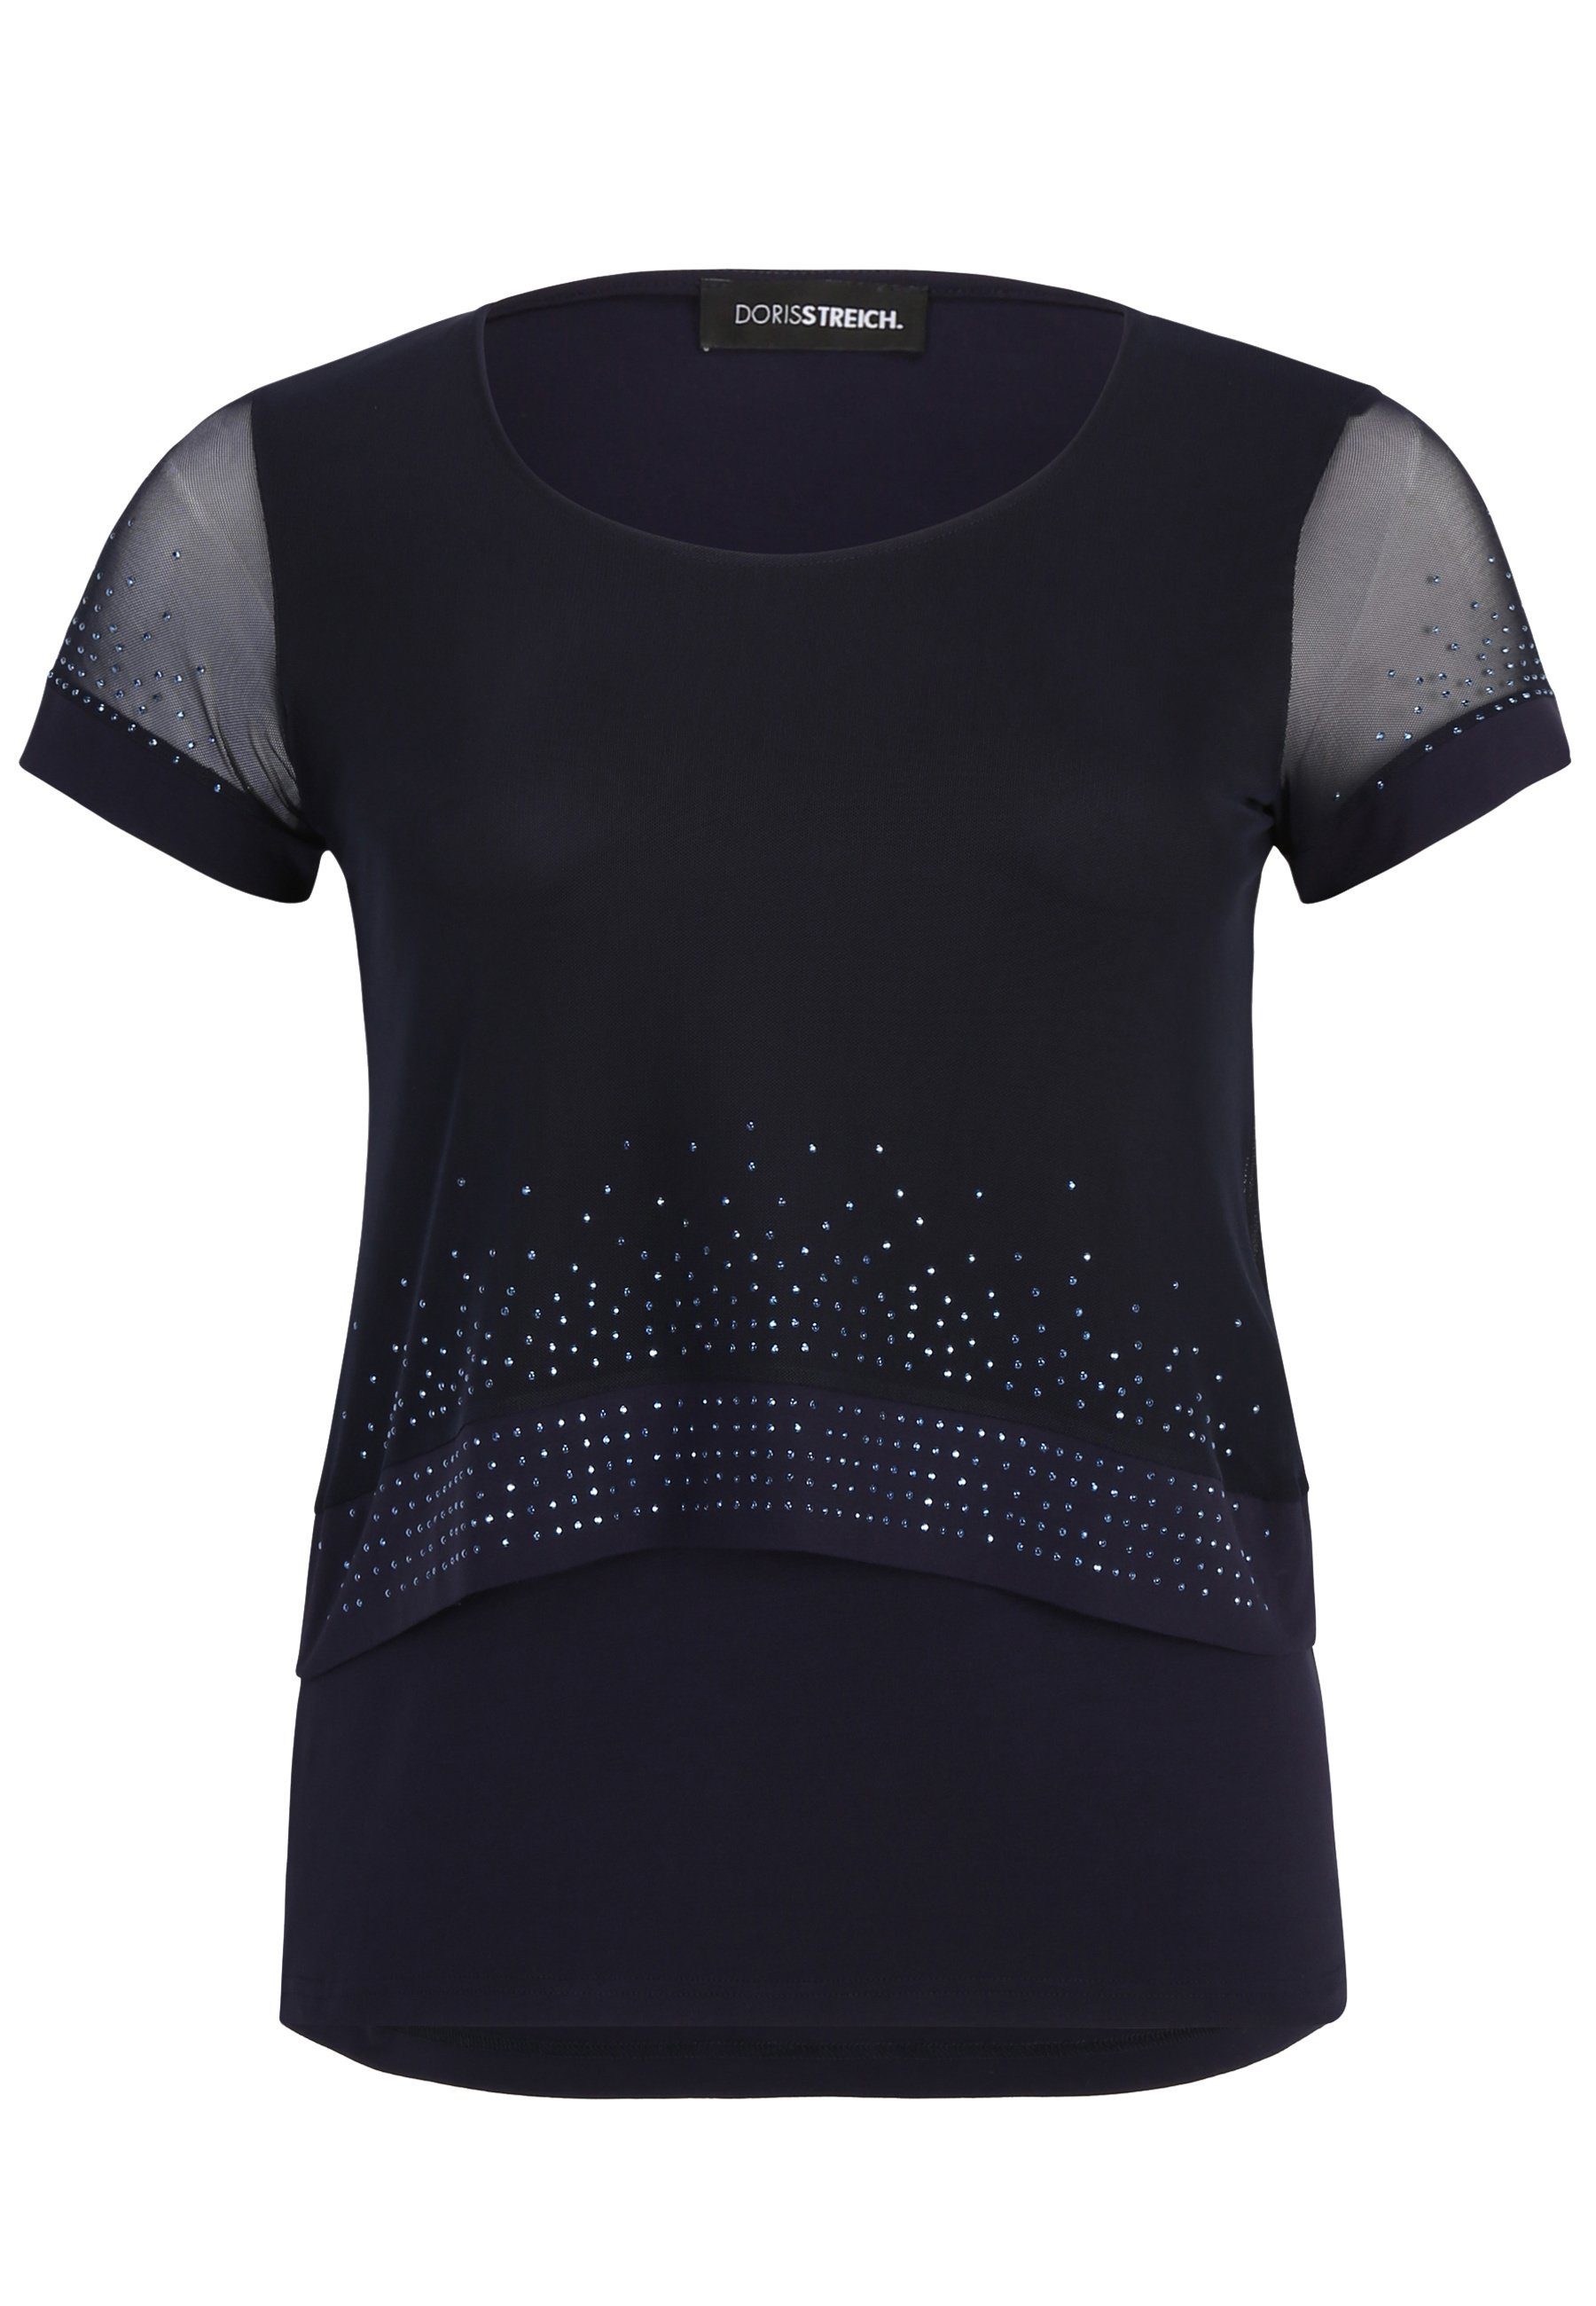 Doris Streich T-Shirt Shirt mit Schmucksteinchen und Transparenten Einsätzen mit Ziersteinen ultramarinblau